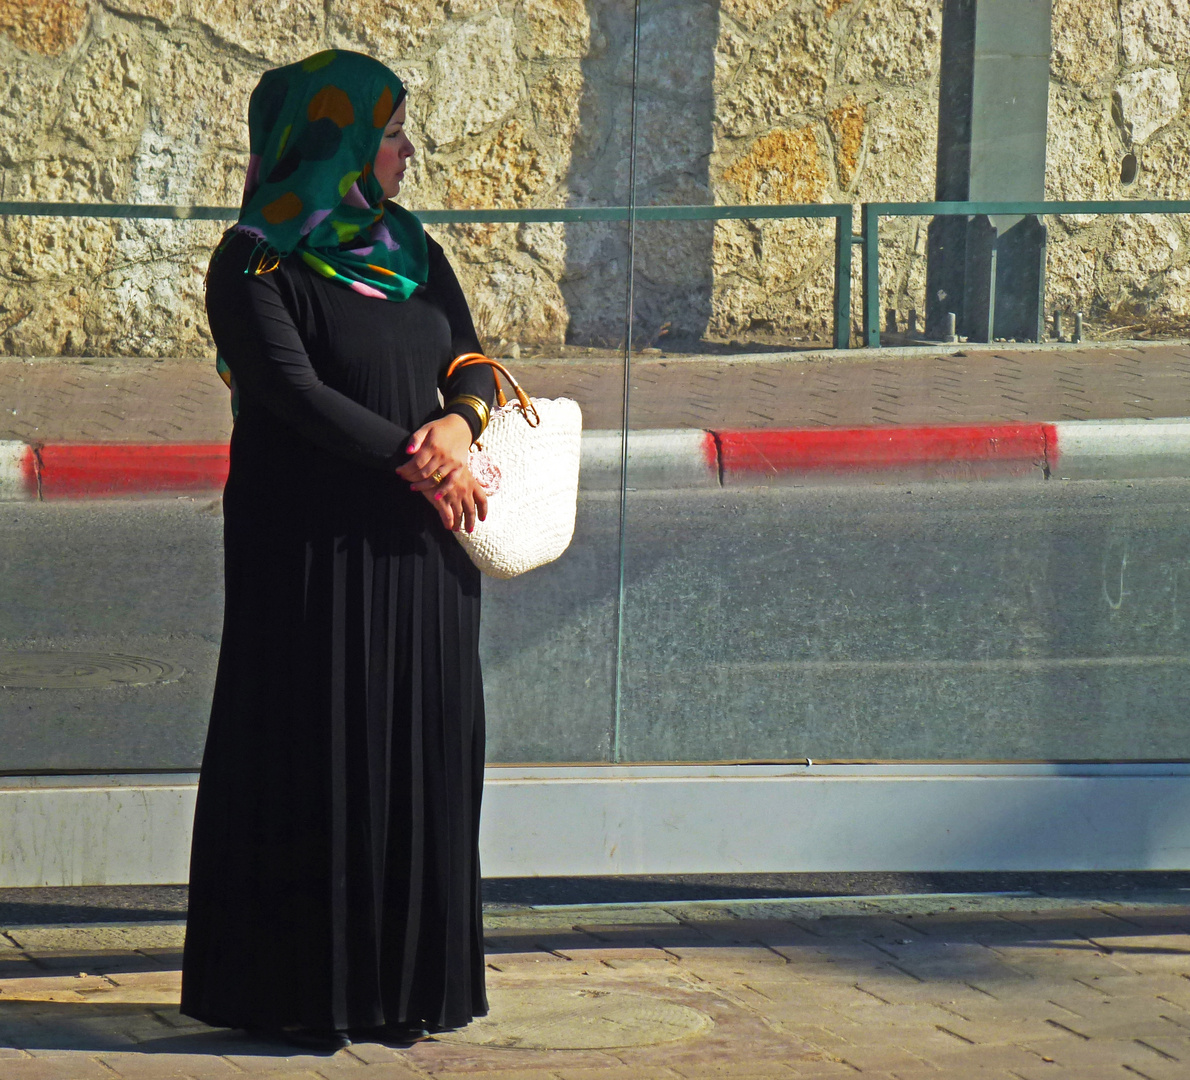 Palestinenserin an Straßenbahnhaltestelle in Jerusalem